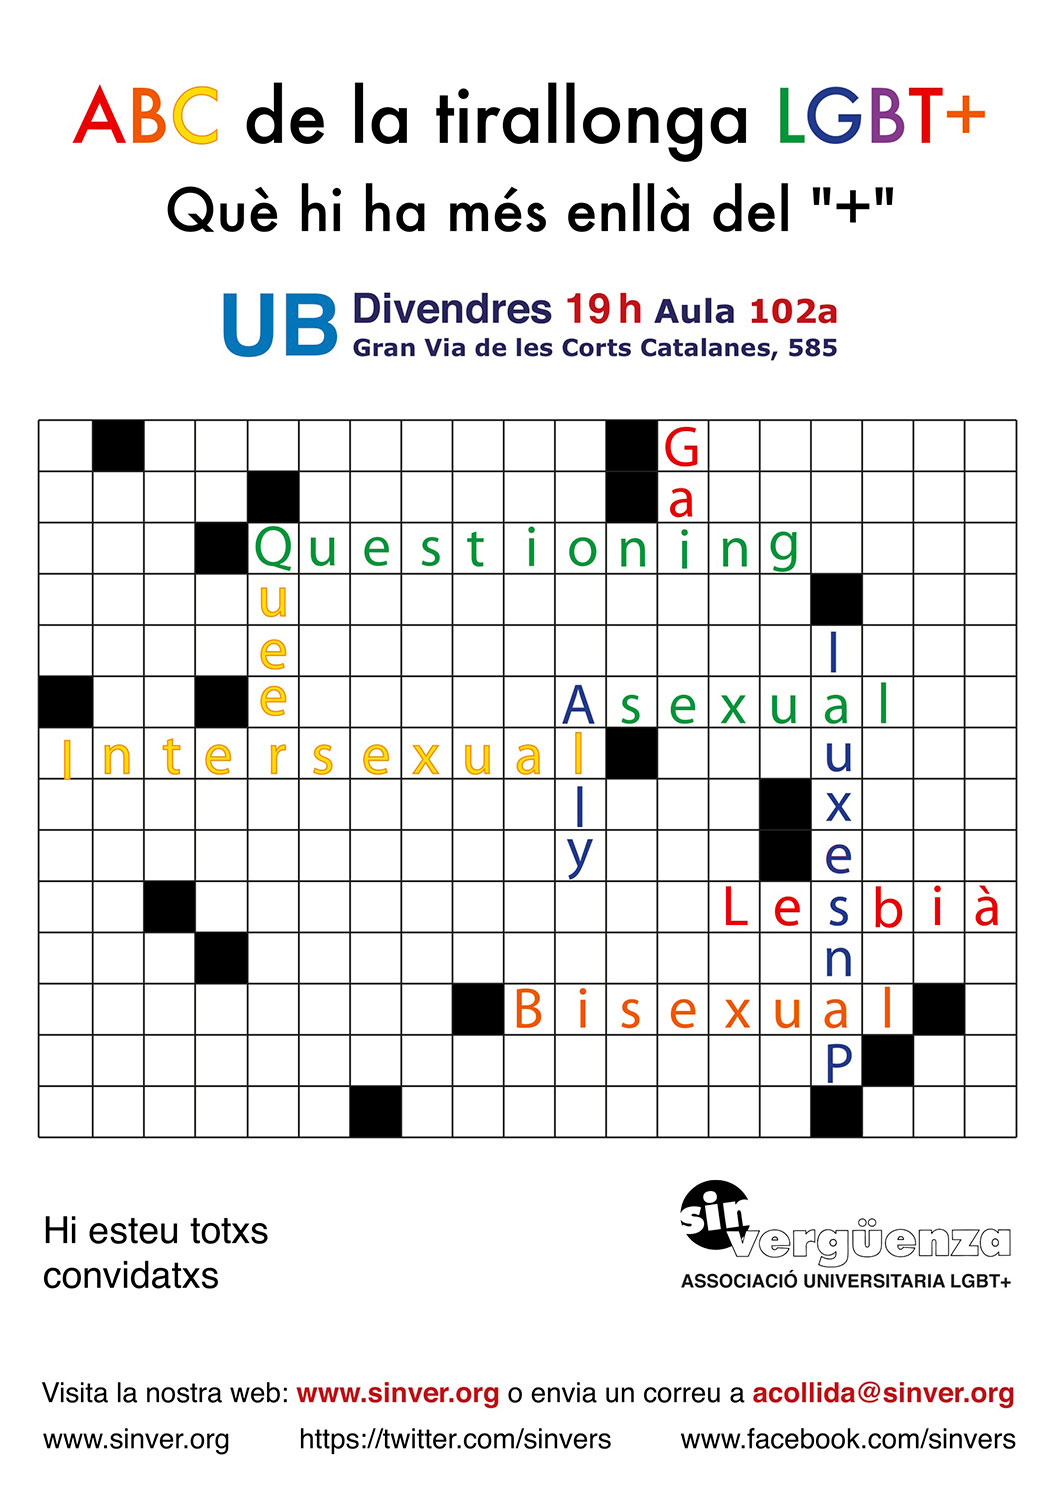 Cartell publicitari de l'activitat "ABC de la tirallonga LGBT+", per a l'associació universitària <a href="www.sinver.org" class="fontRed" target="_blank">Sin Vergüenza</a>.